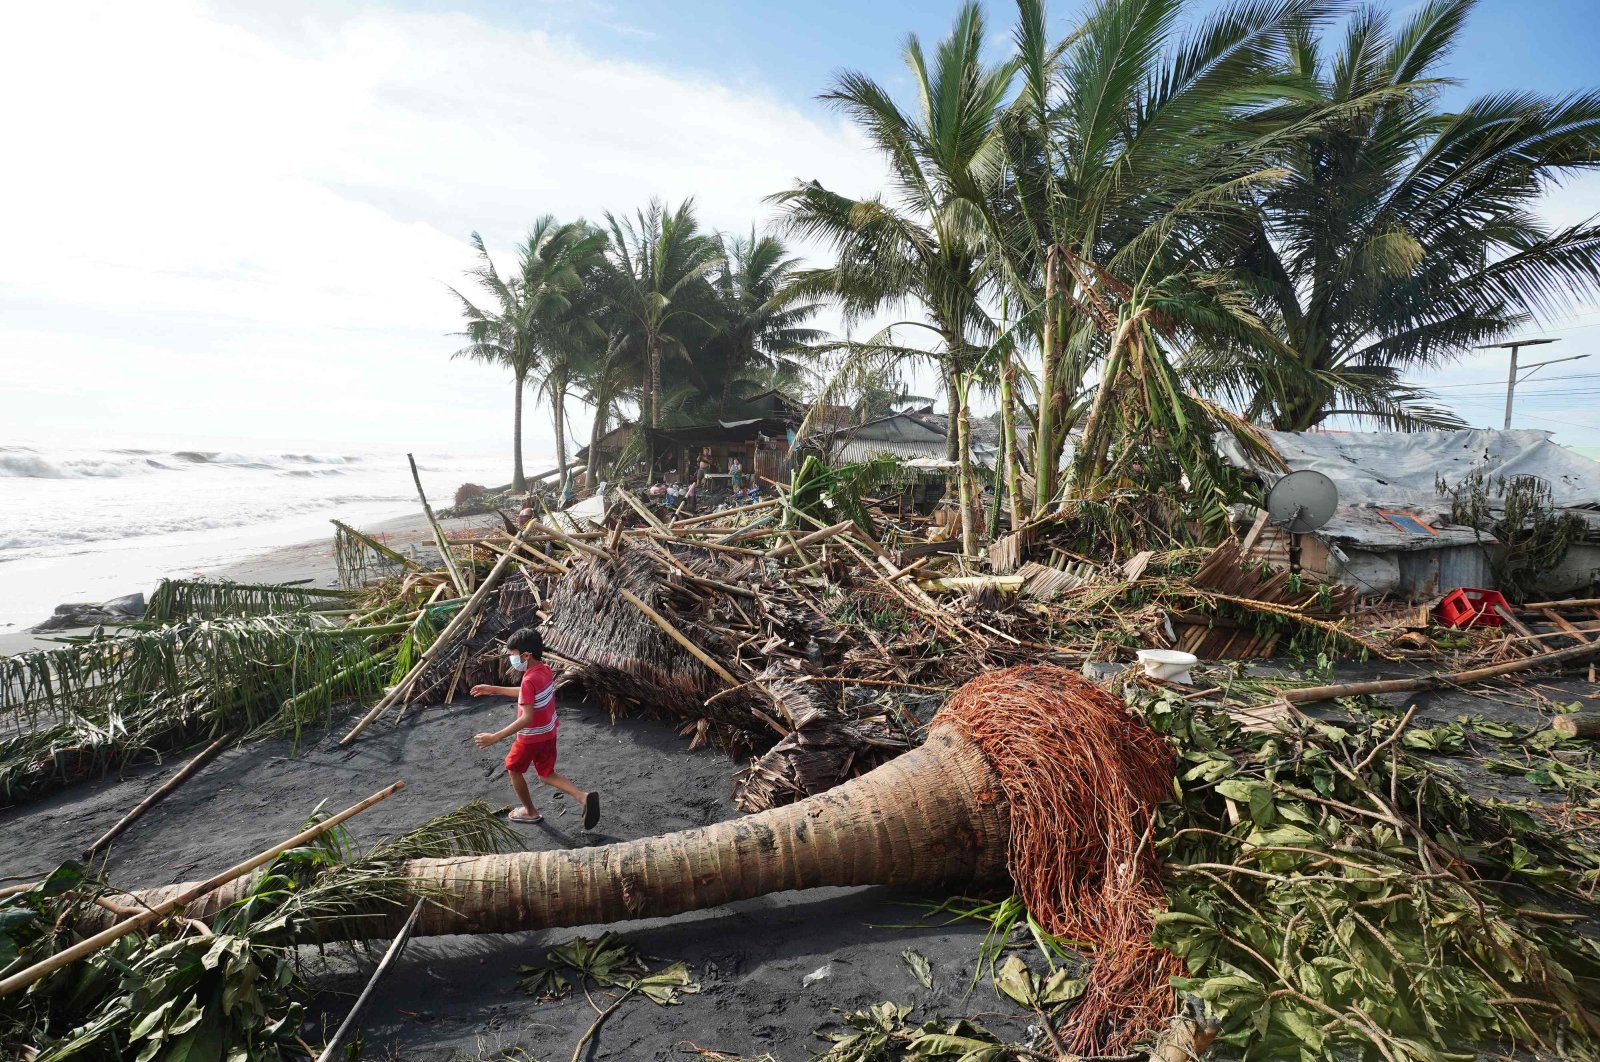 Korban tewas melewati 30 dari Super Typhoon Rai di Filipina